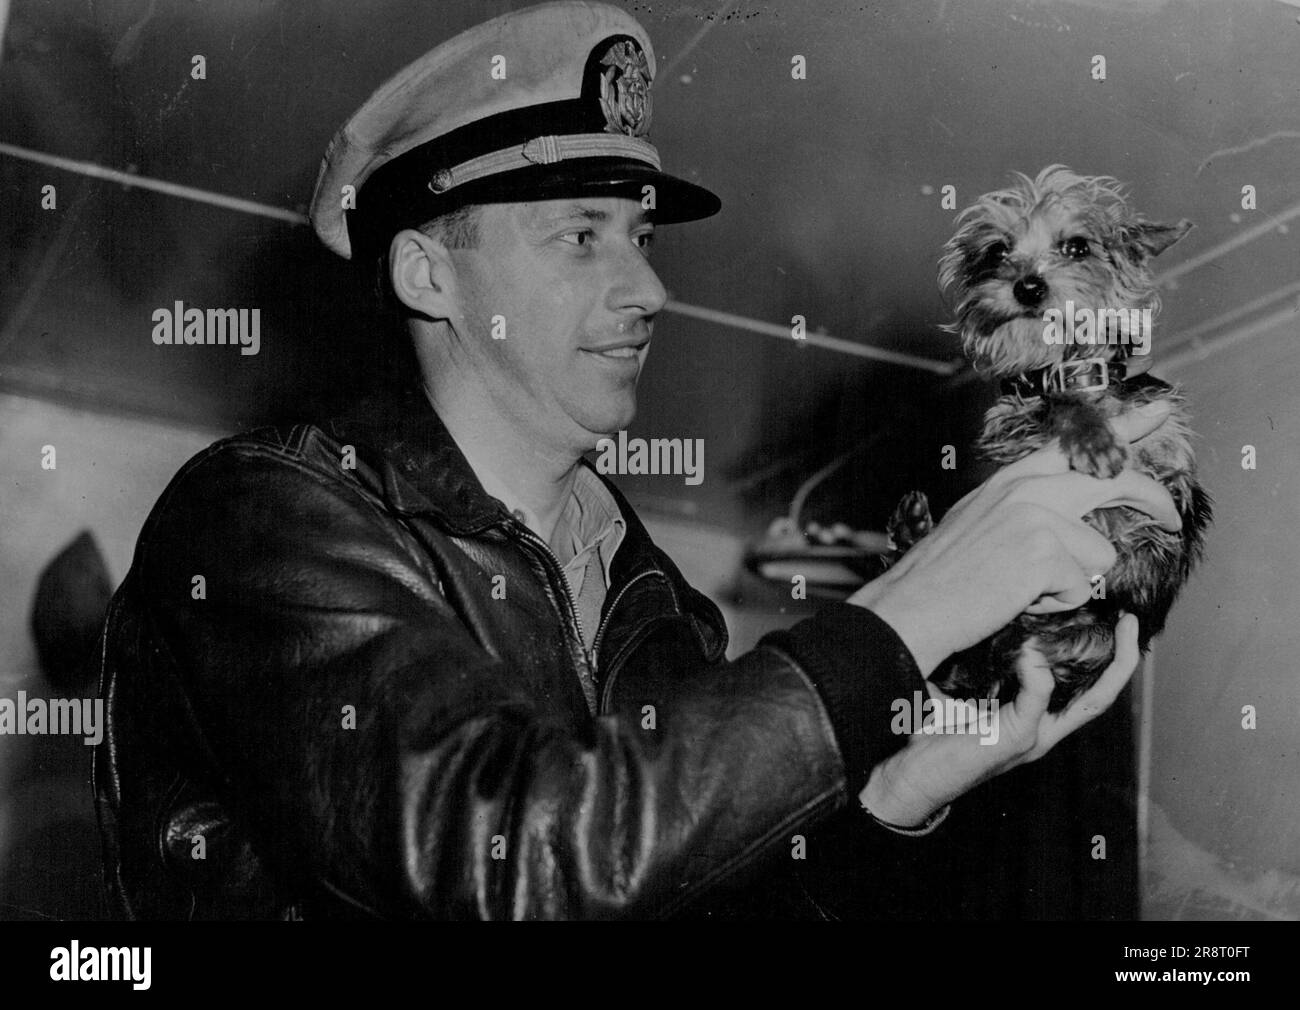 Tich, ein seidenhaariger Terrier (oben), der Sänger John Charles Thomas in Sydney gegeben wurde, ist auf dem Weg nach Amerika in der Sonoma, die sich jetzt am Victoria Dock befindet. Tich und Chief Officer V.A. Johnson. 25. Juli 1947. Stockfoto